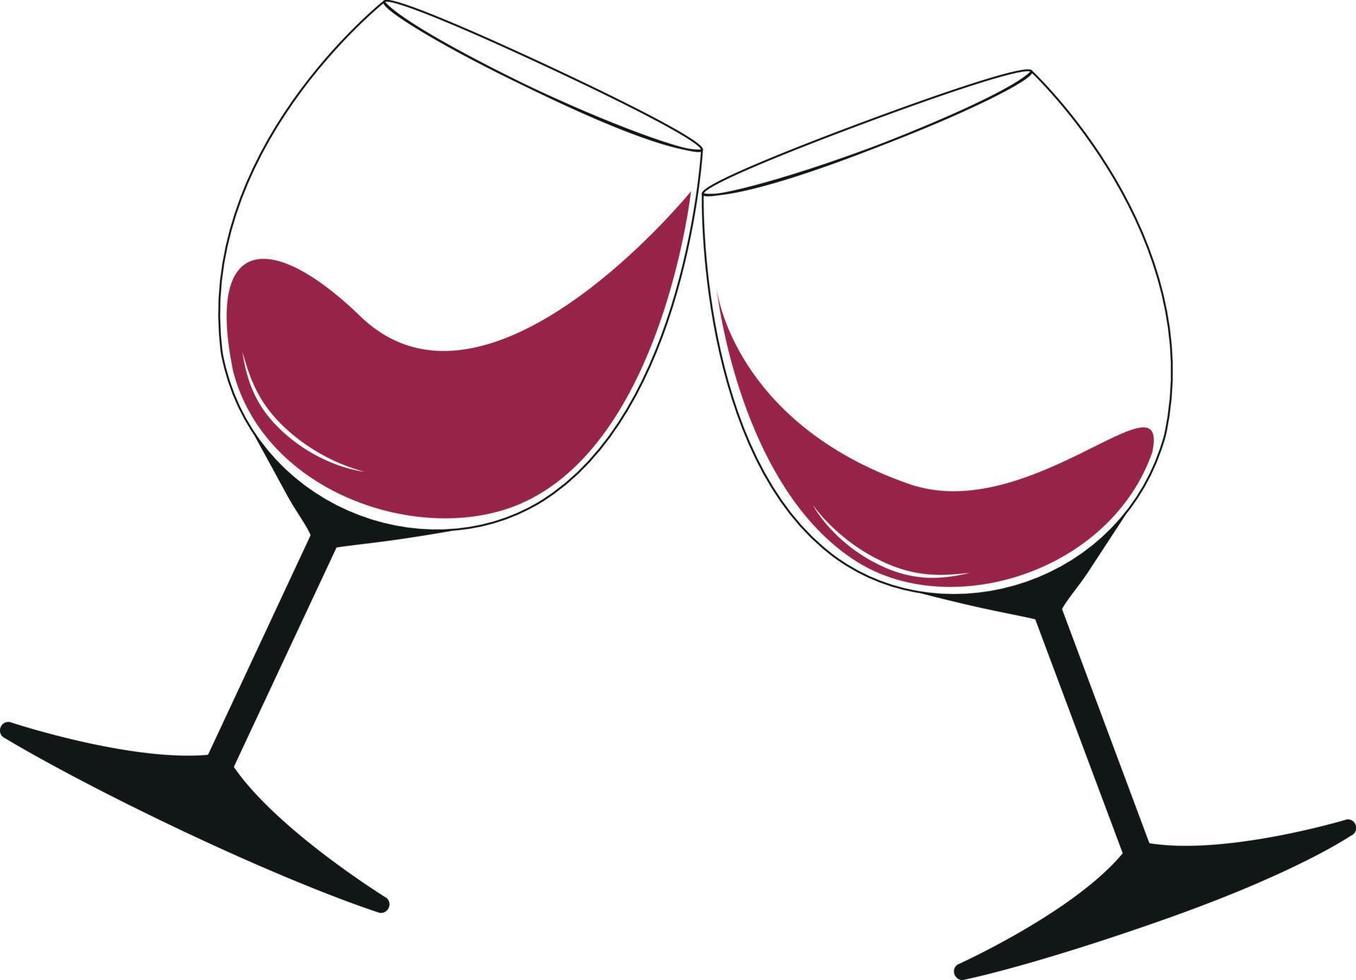 twee bril van rood wijn in kantelen, gerinkel bril van viering geroosterd brood vector